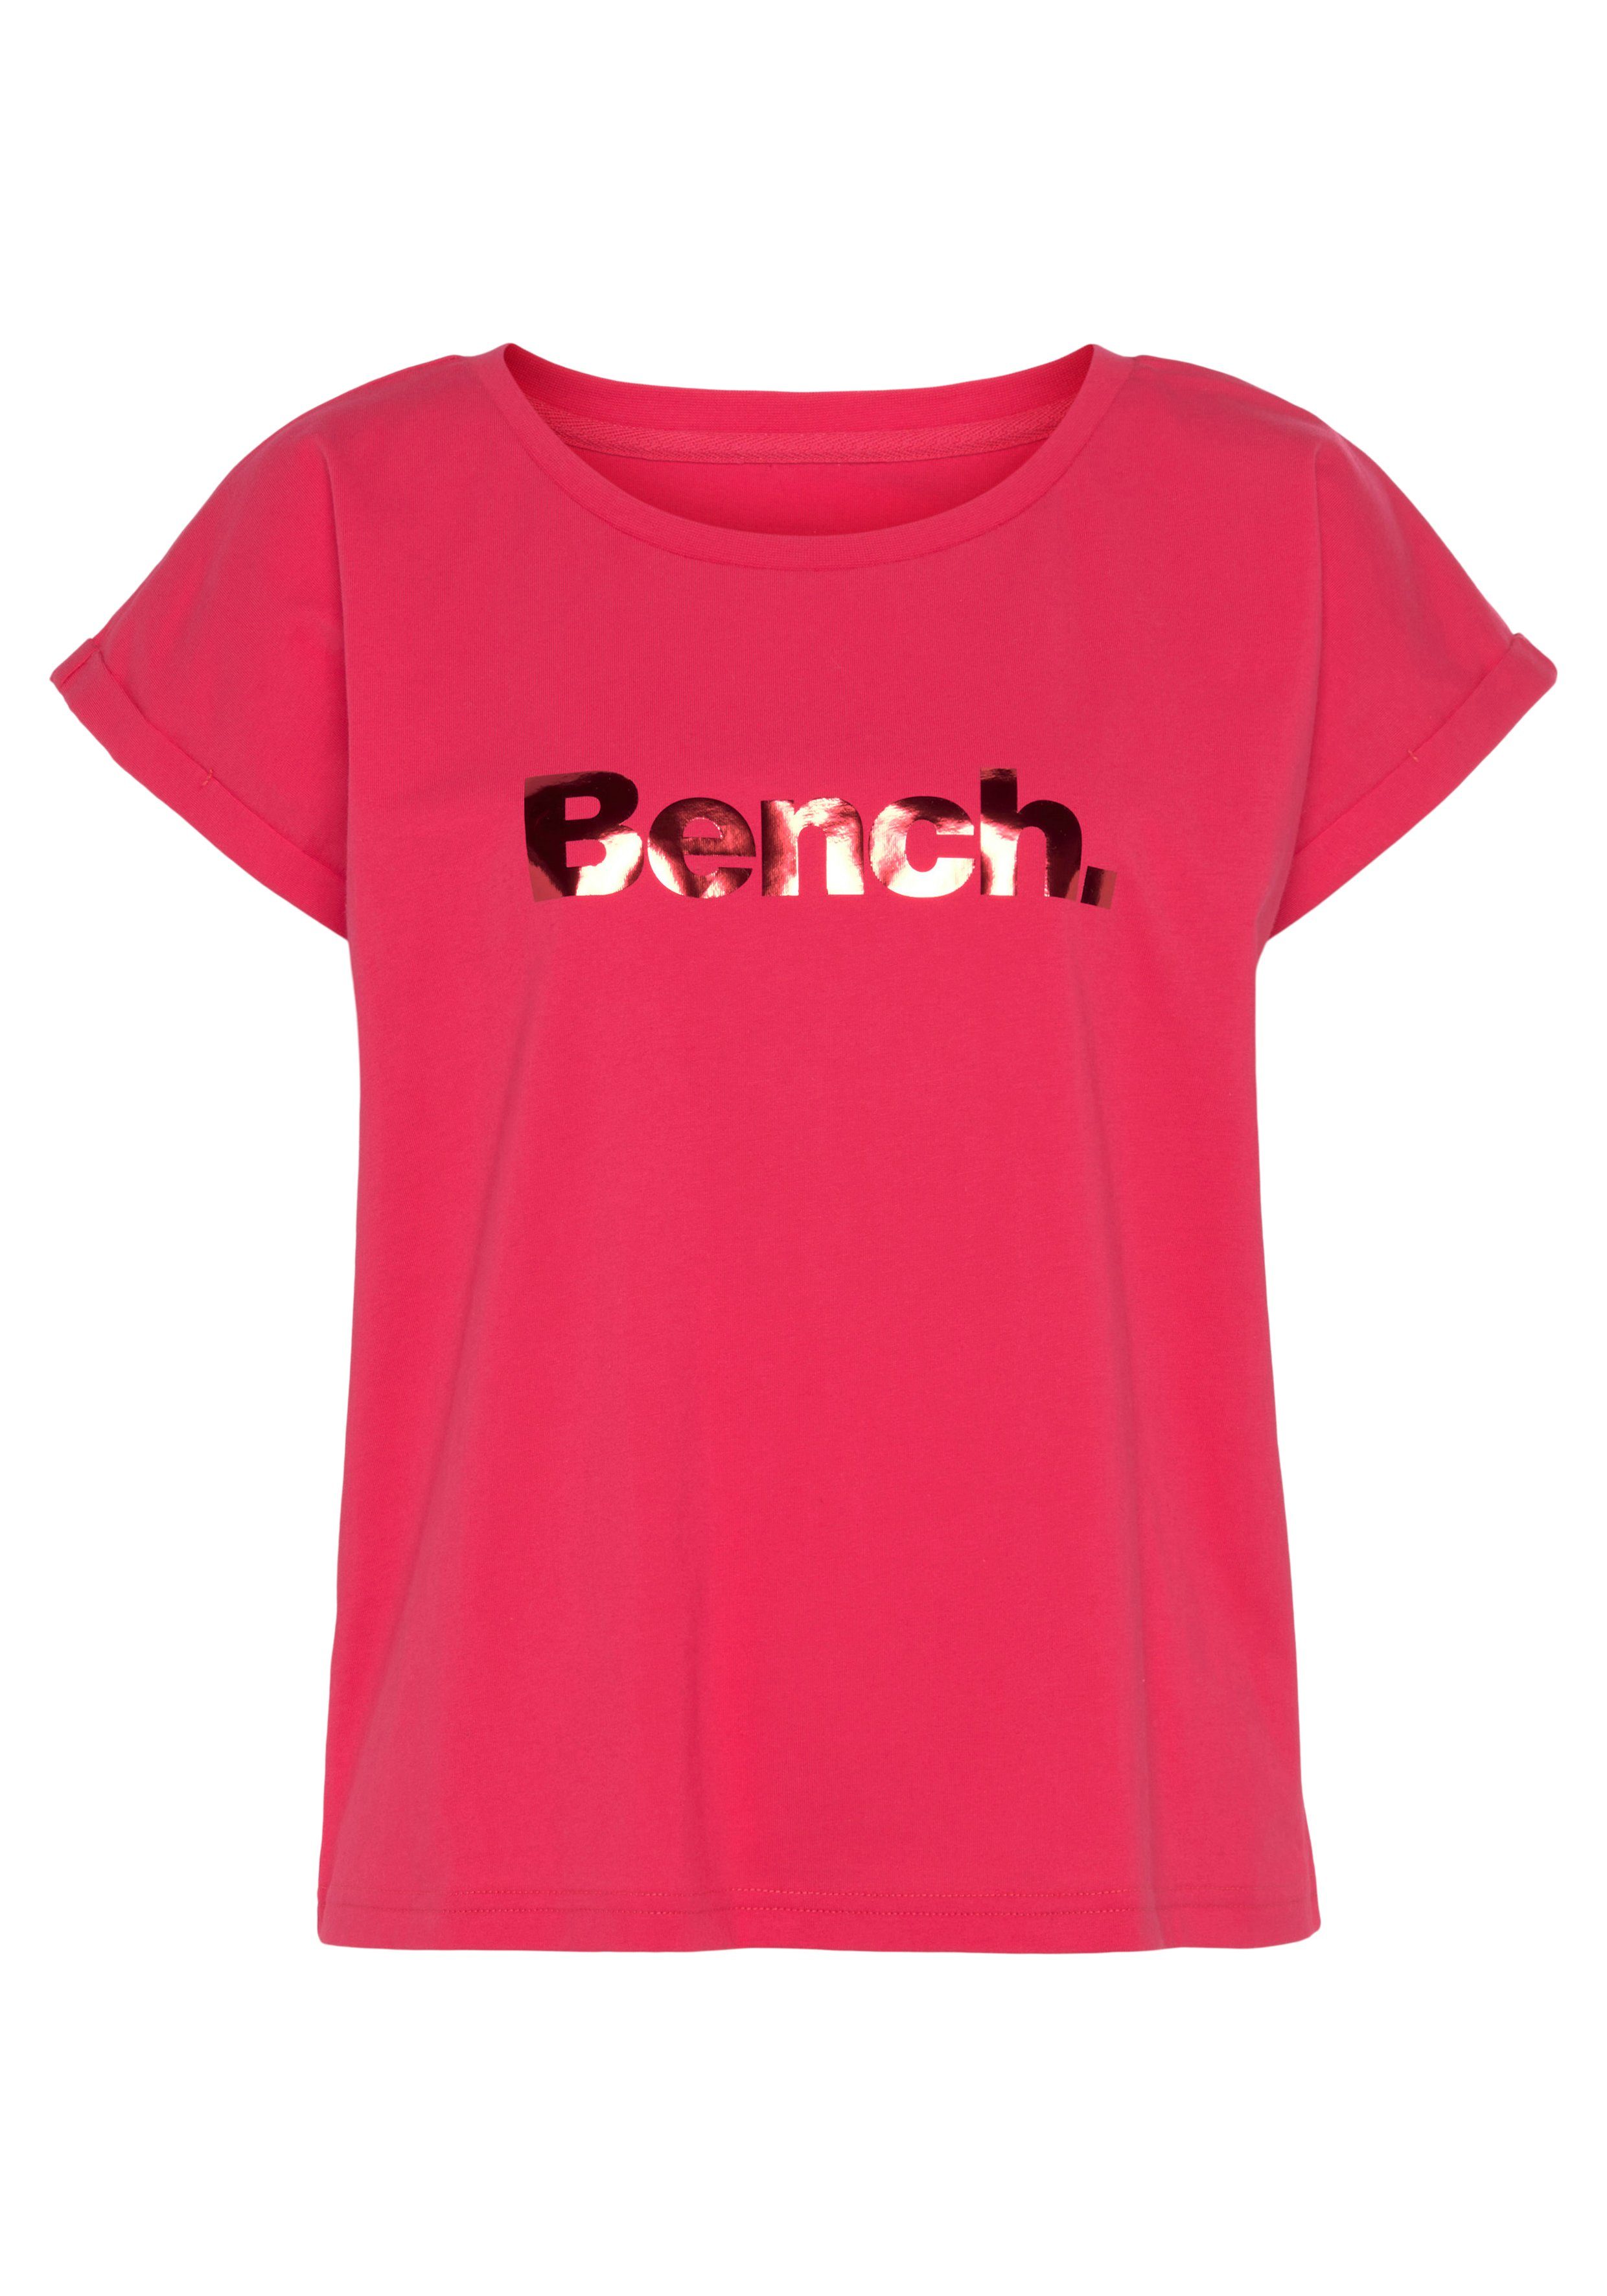 Loungeshirt pink glänzendem -Kurzarmshirt, T-Shirt Loungewear mit Logodruck, Loungewear Bench.